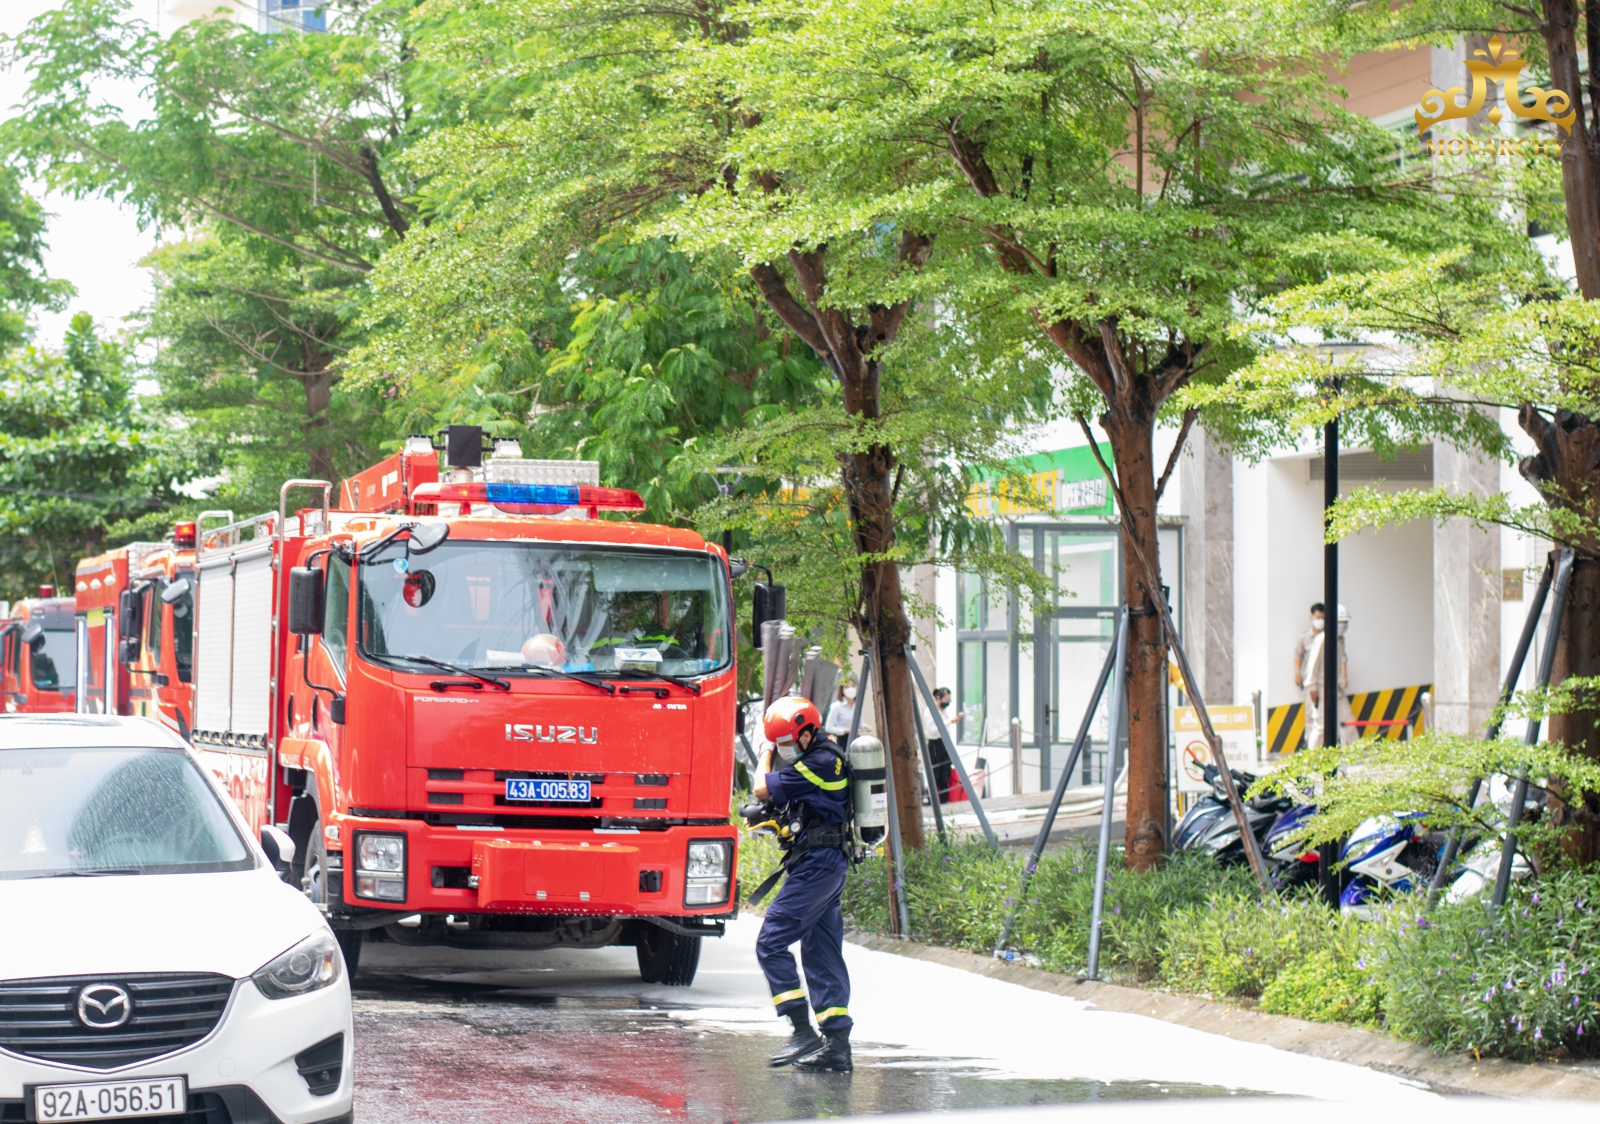 Sau khi nhận được thông báo cháy trong toà nhà, phòng Cảnh sát PCCC quận Sơn Trà đã cử 5 xe và hơn 30 chiến sỹ đến hiện trường chữa cháy.